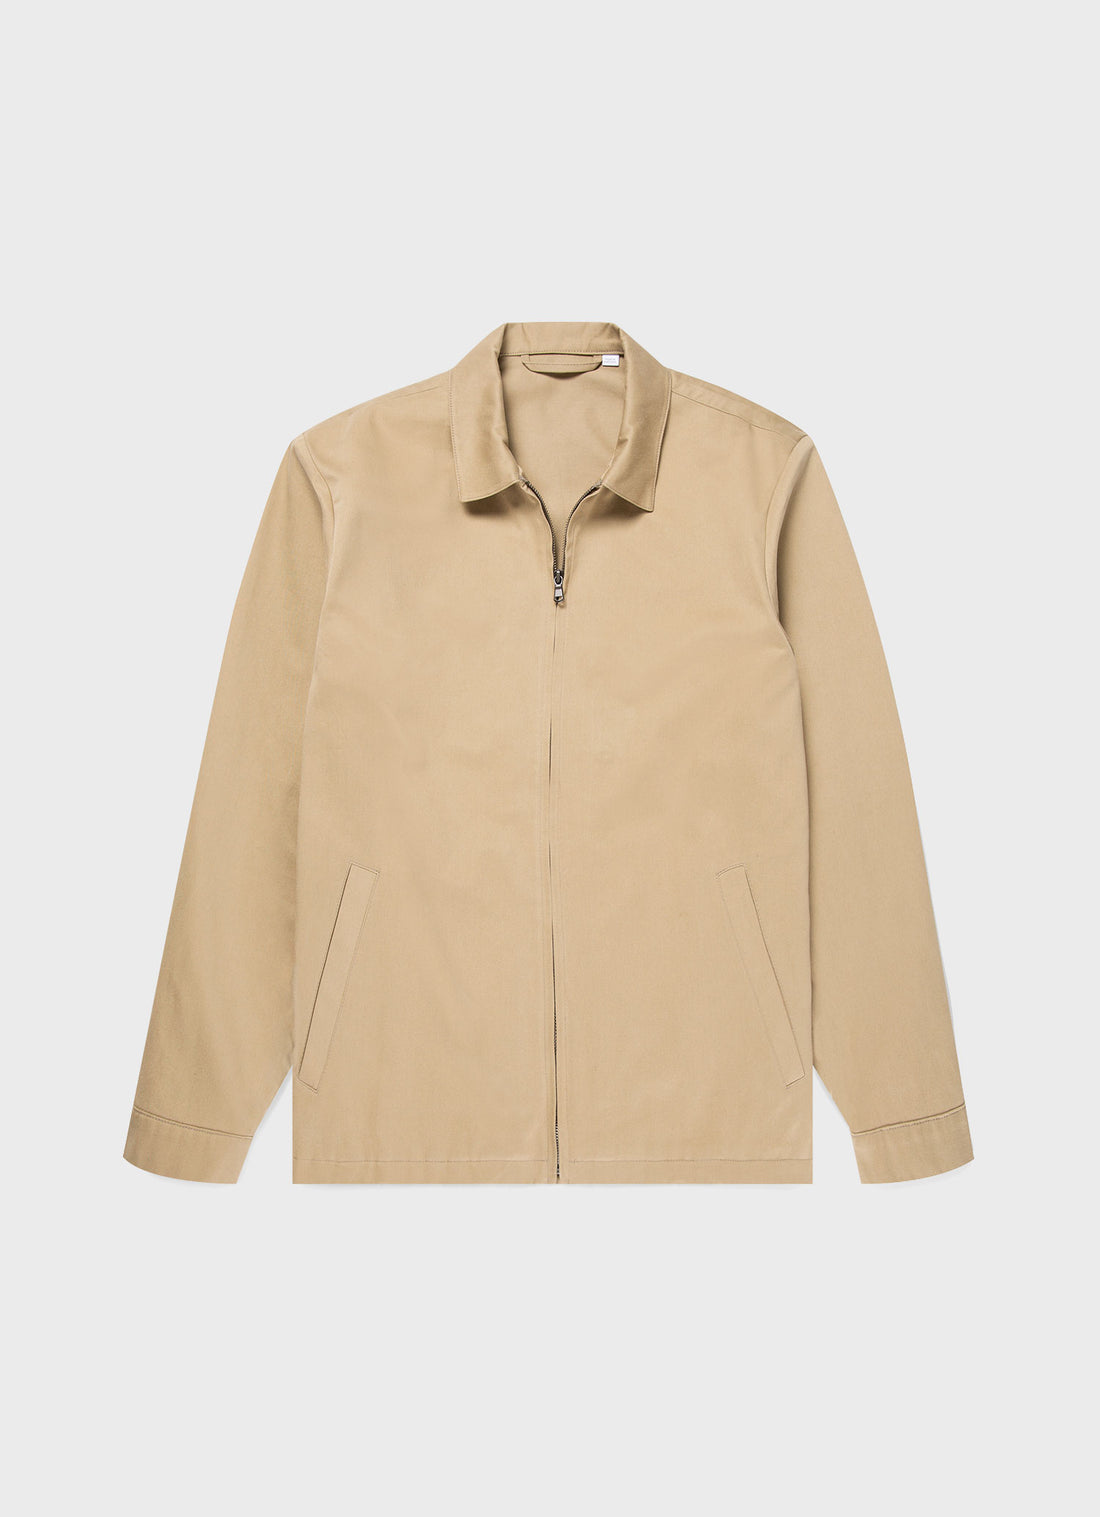 Men's Cotton Harrington Jacket in Stone